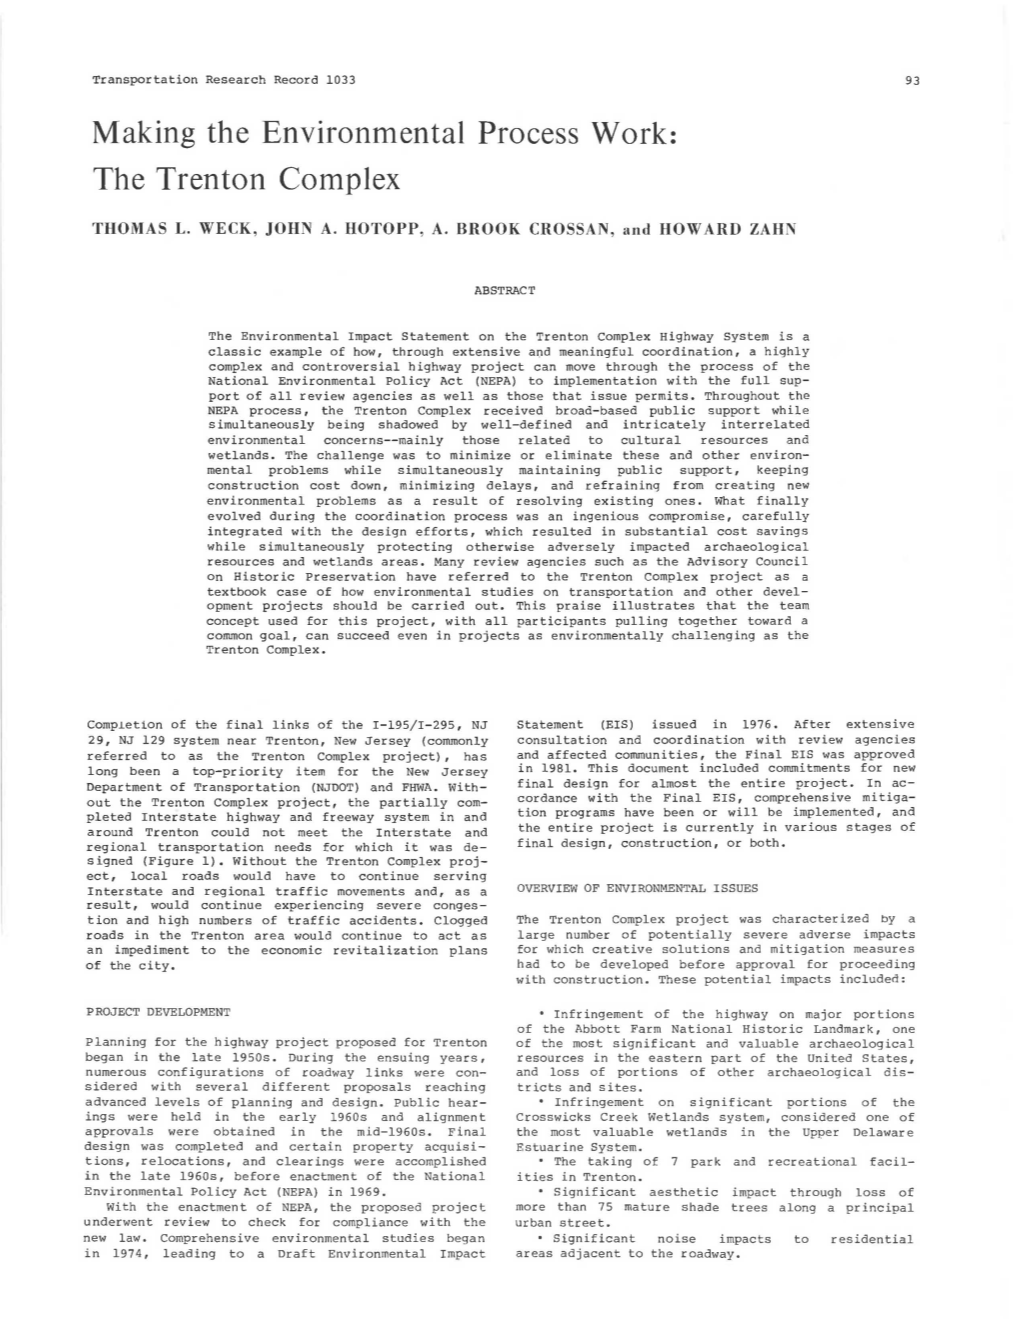 The Trenton Complex